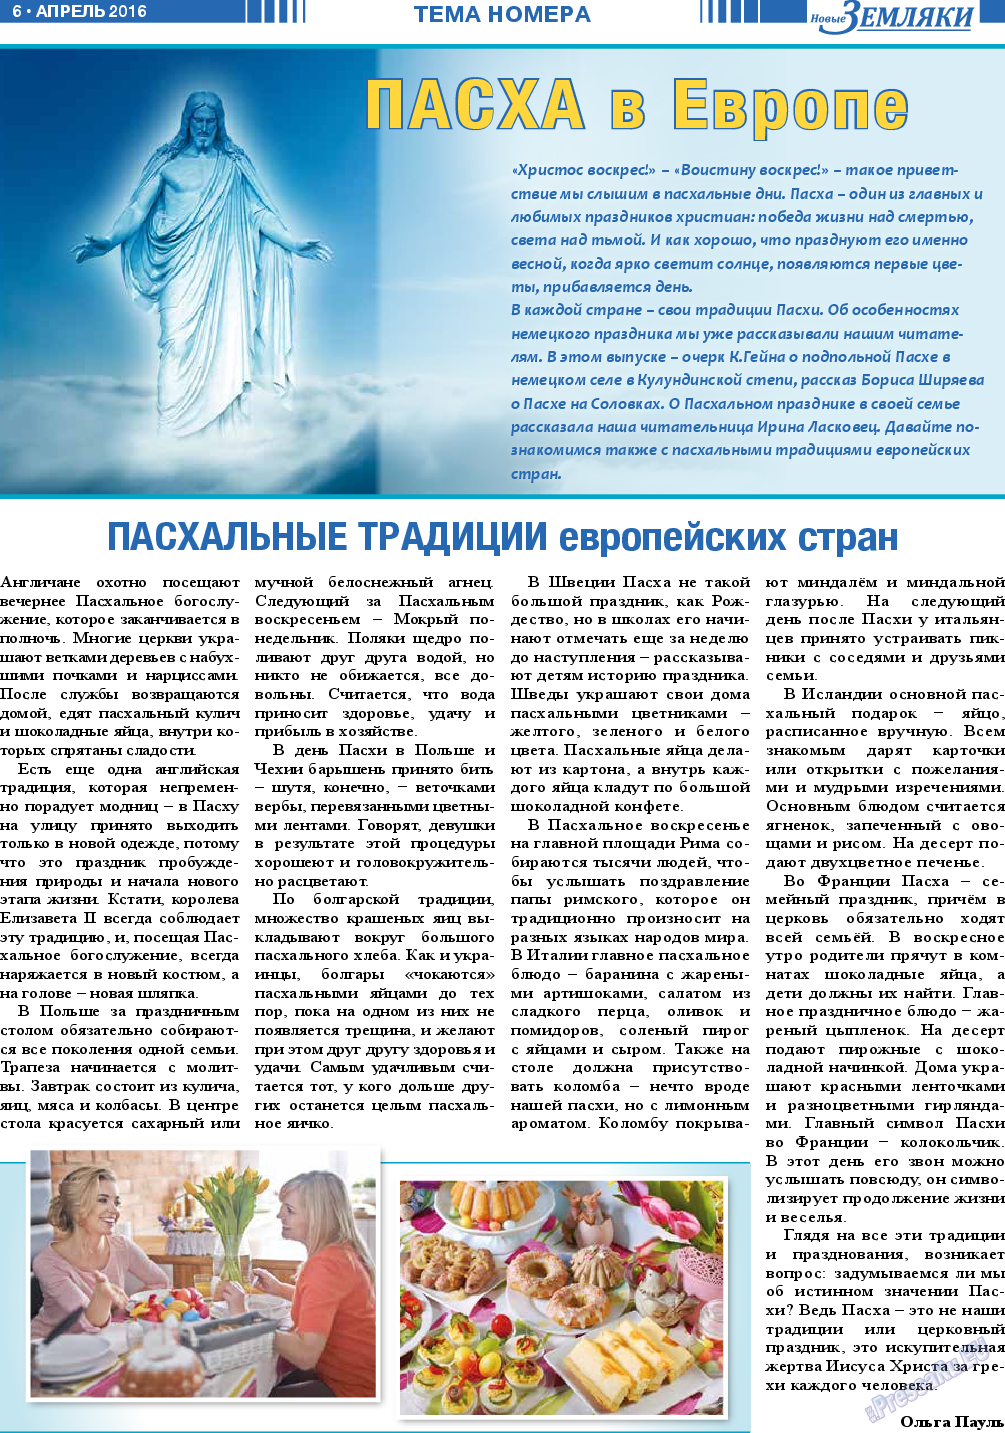 Новые Земляки (газета). 2016 год, номер 4, стр. 6